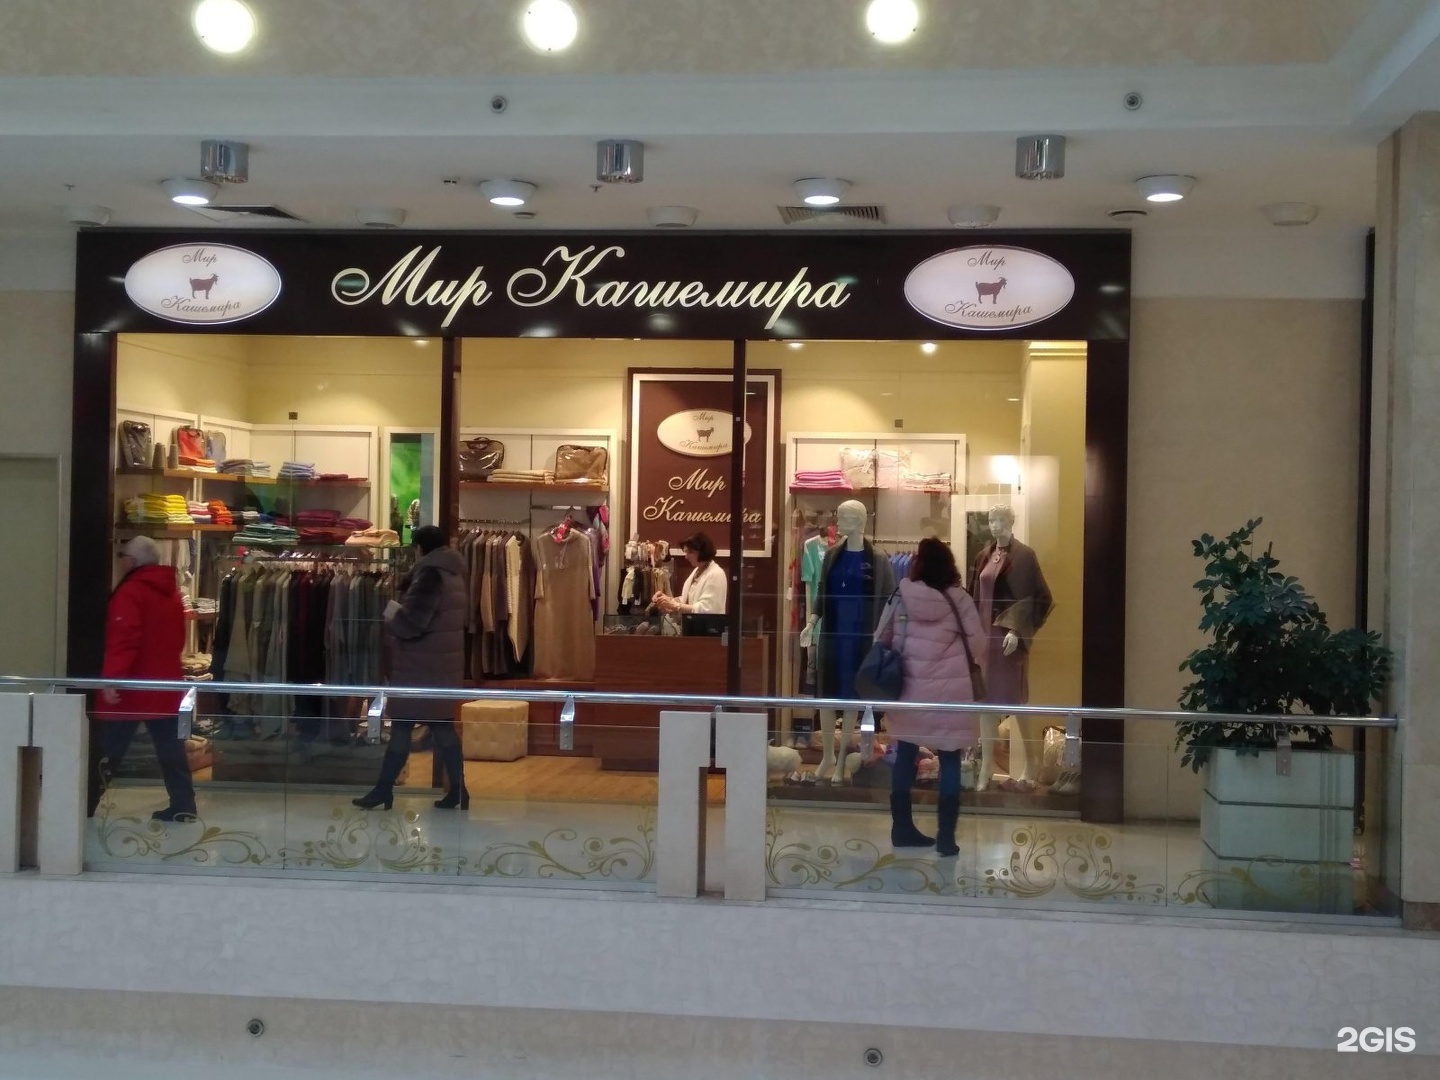 Покровский outlet. Мир кашемира магазин. Магазины женской одежды в Ереван Плаза. Мир кашемира магазин в Ереване. Магазины одежды в Ереване.